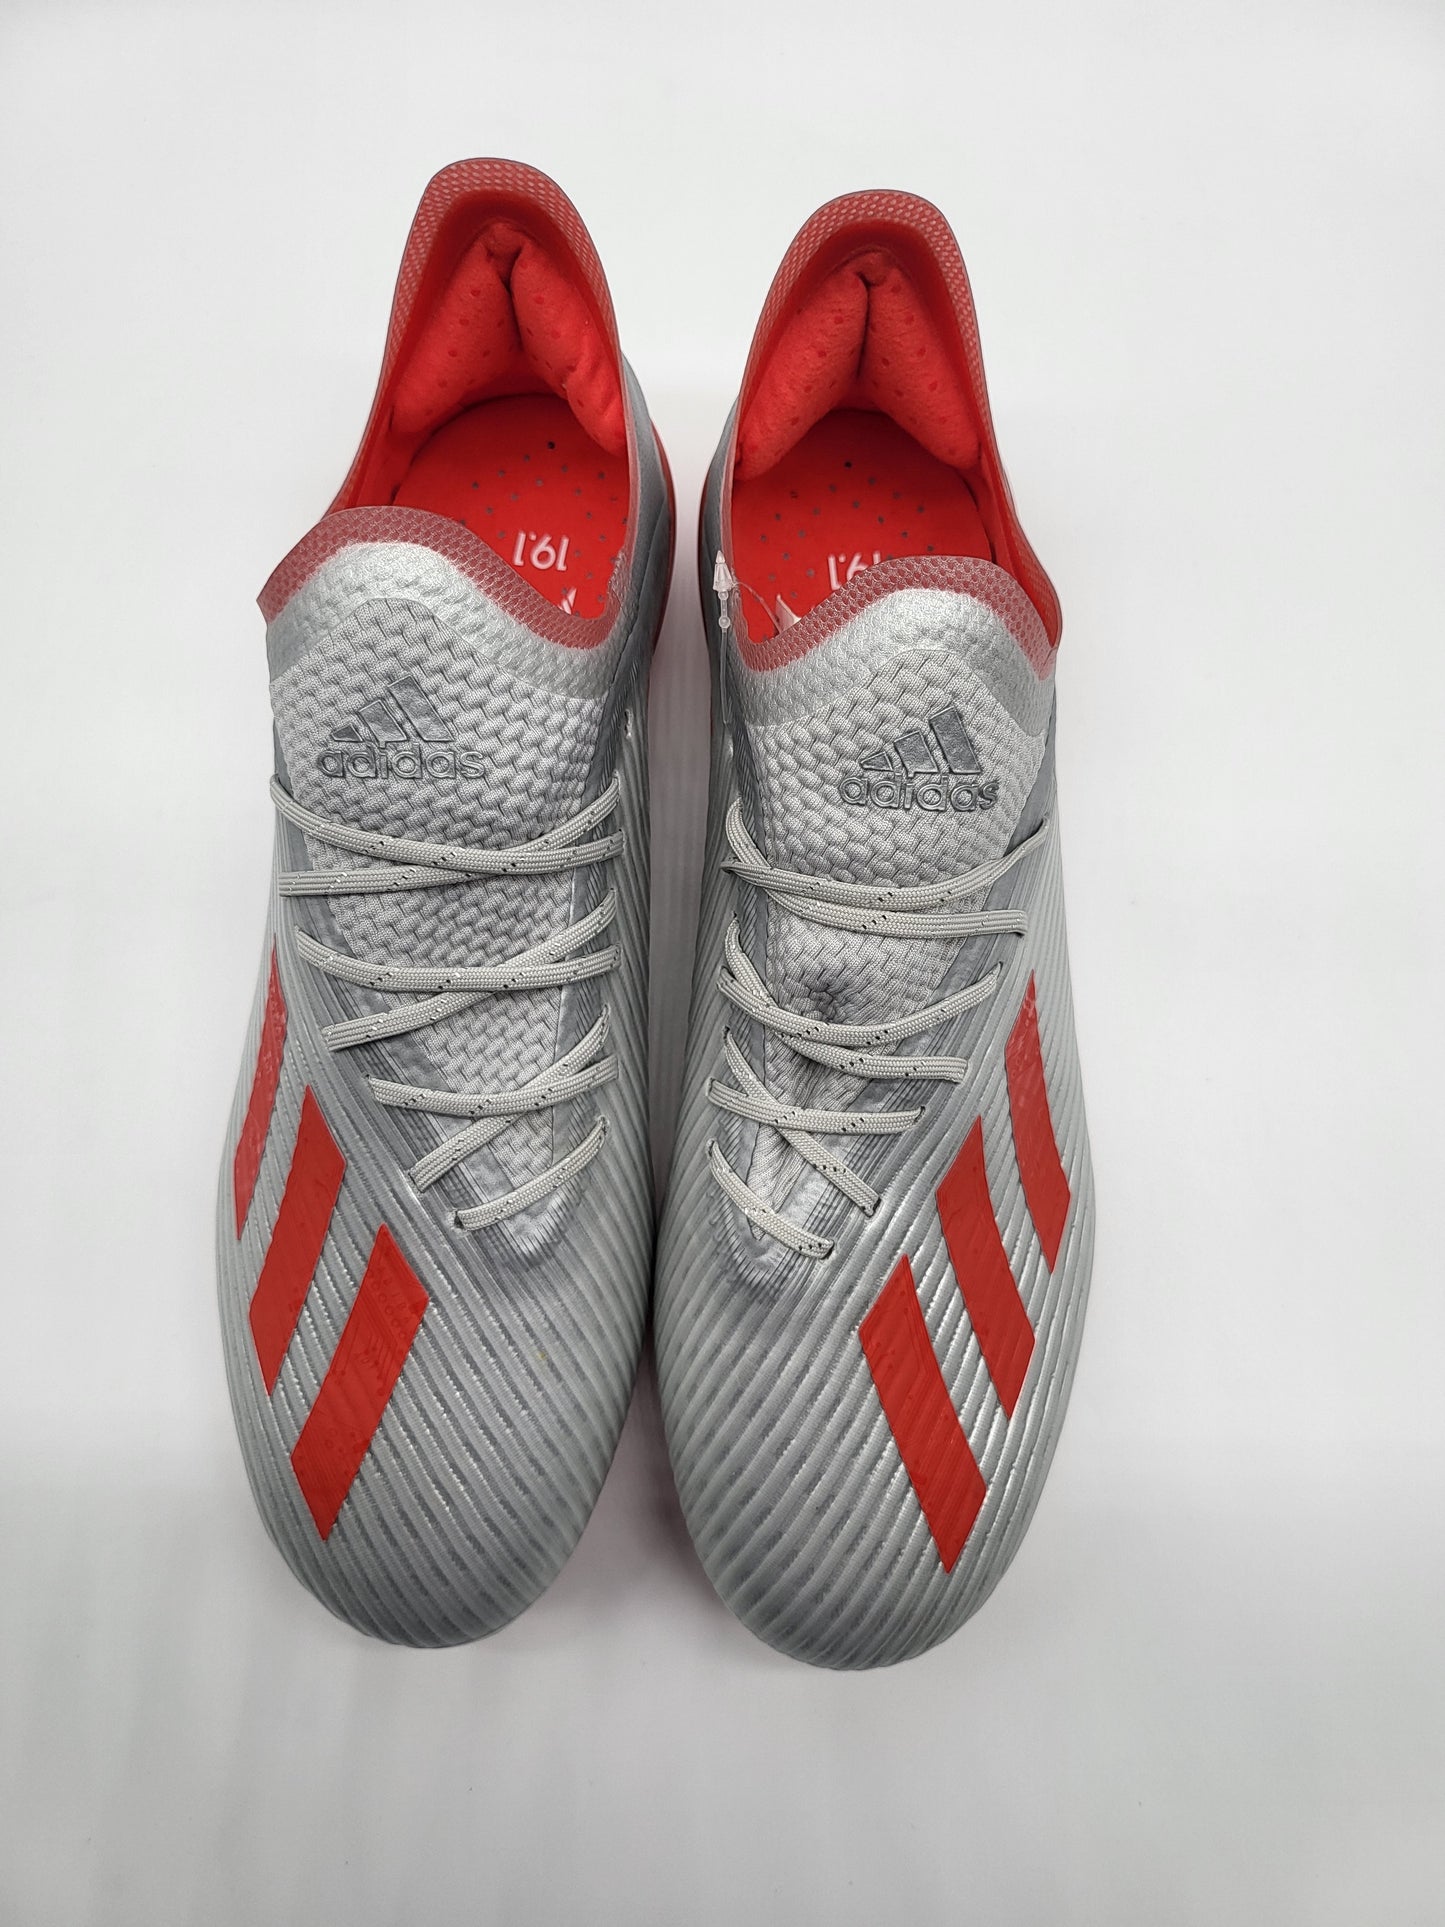 Adidas X 19.1 FG Gray Red